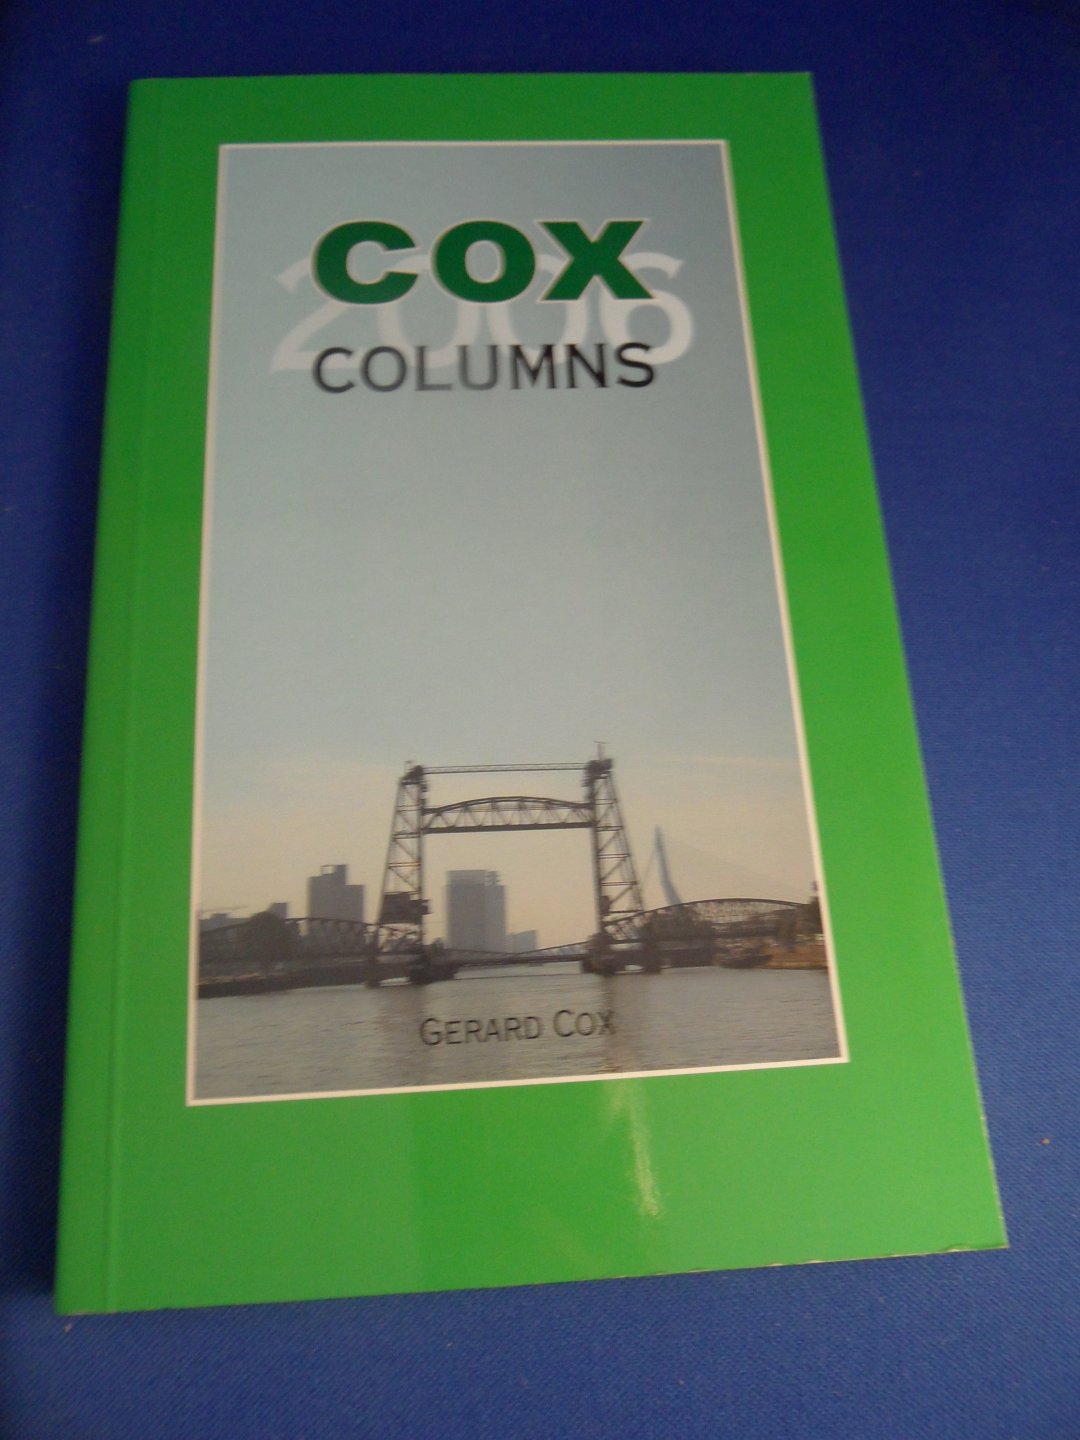 Cox, Gerard - Cox Columns, 2006